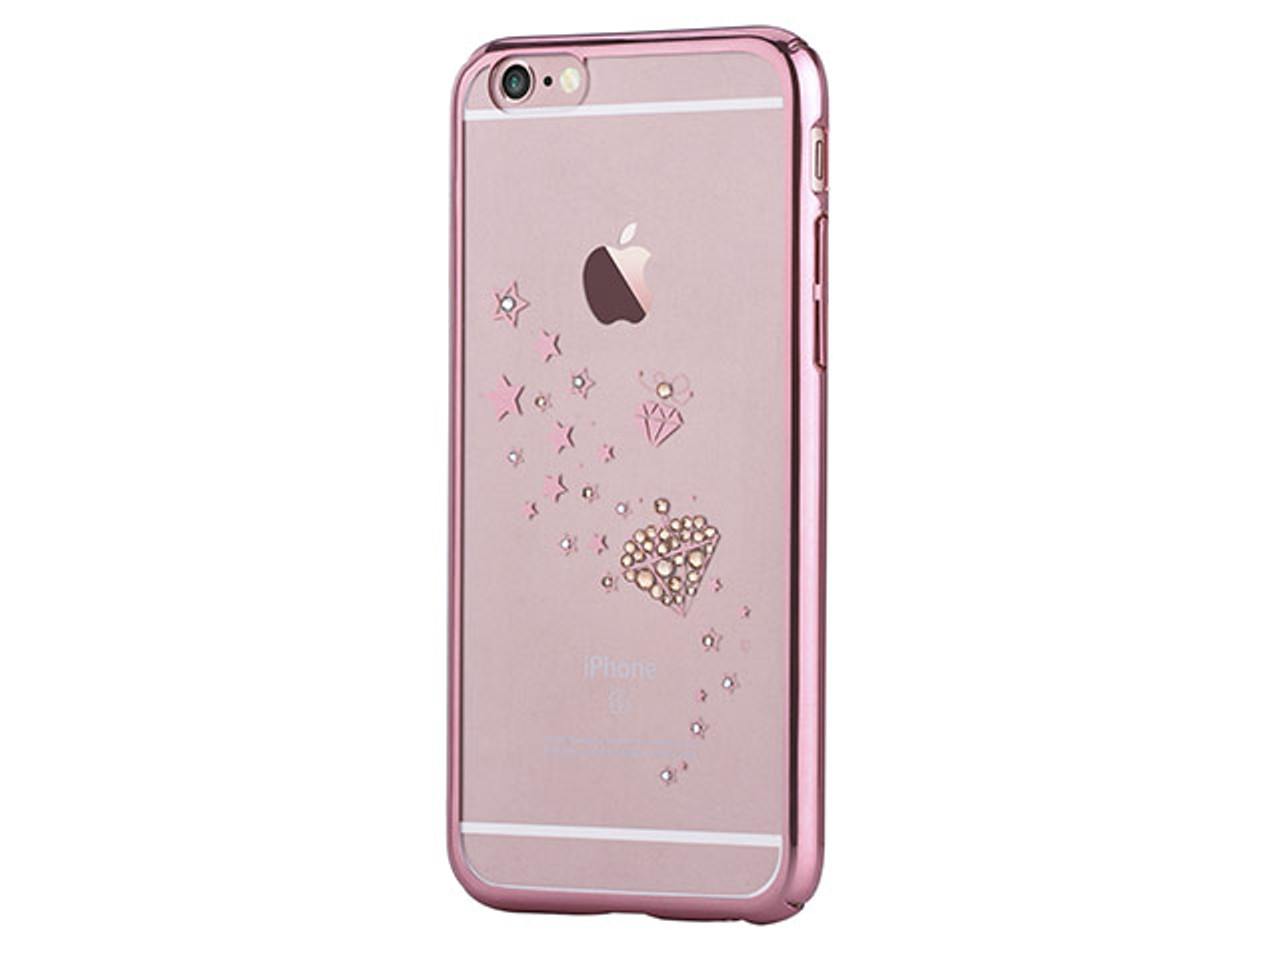 Hertog bevestigen tijdelijk Devia Crystal Starry Case Swarovski for Apple iPhone 6s/6s Plus